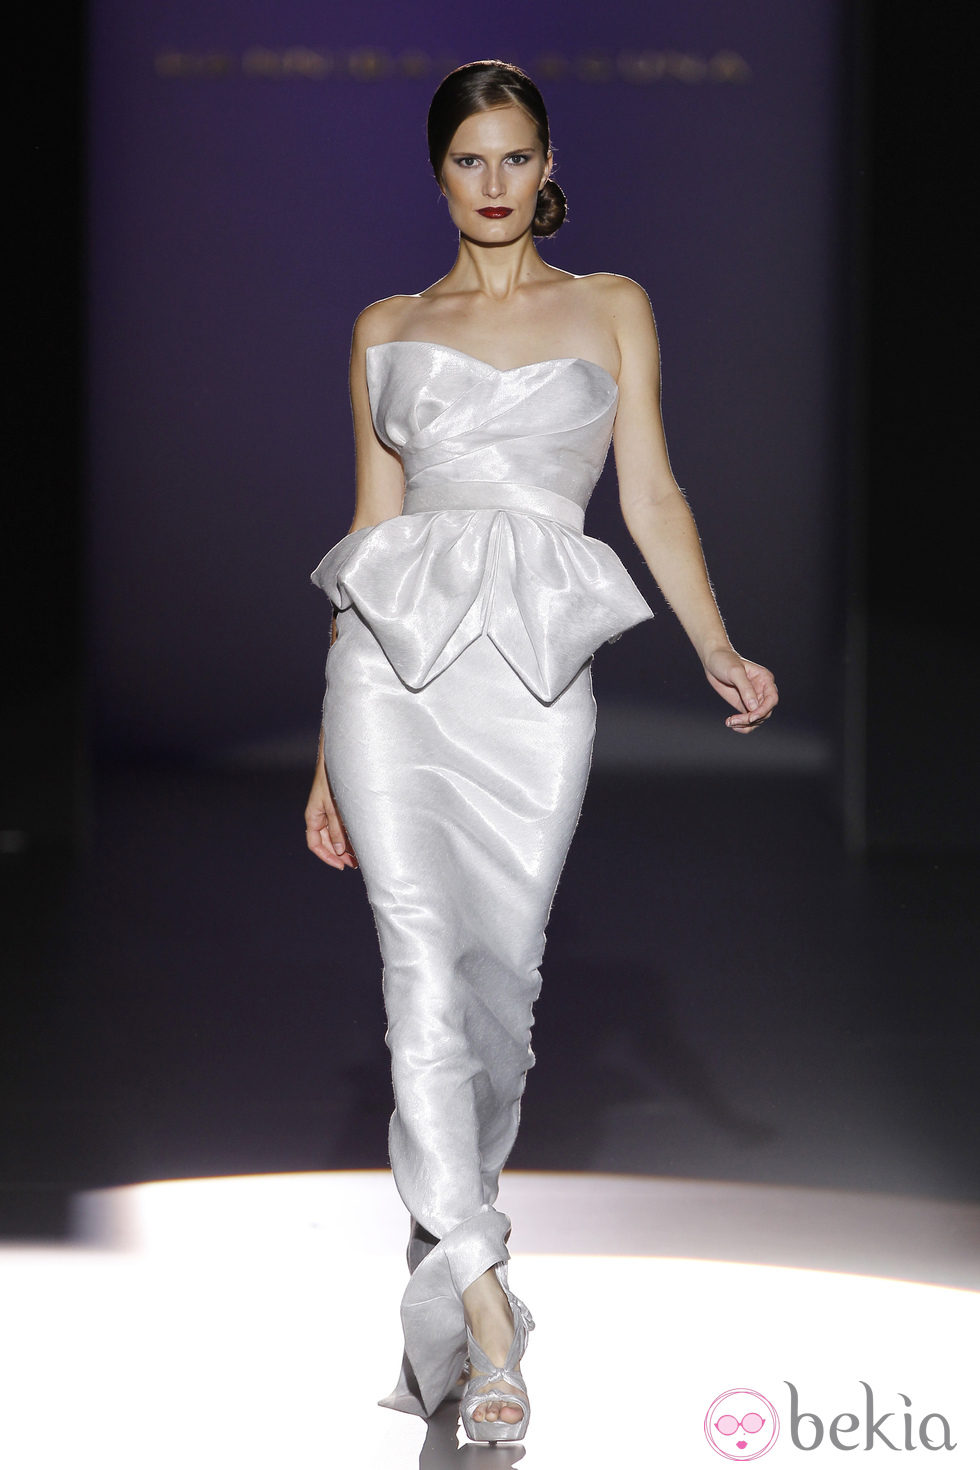 Vestido blanco con escote palabra de honor de Hannibal Laguna en Cibeles, colección primavera de 2012